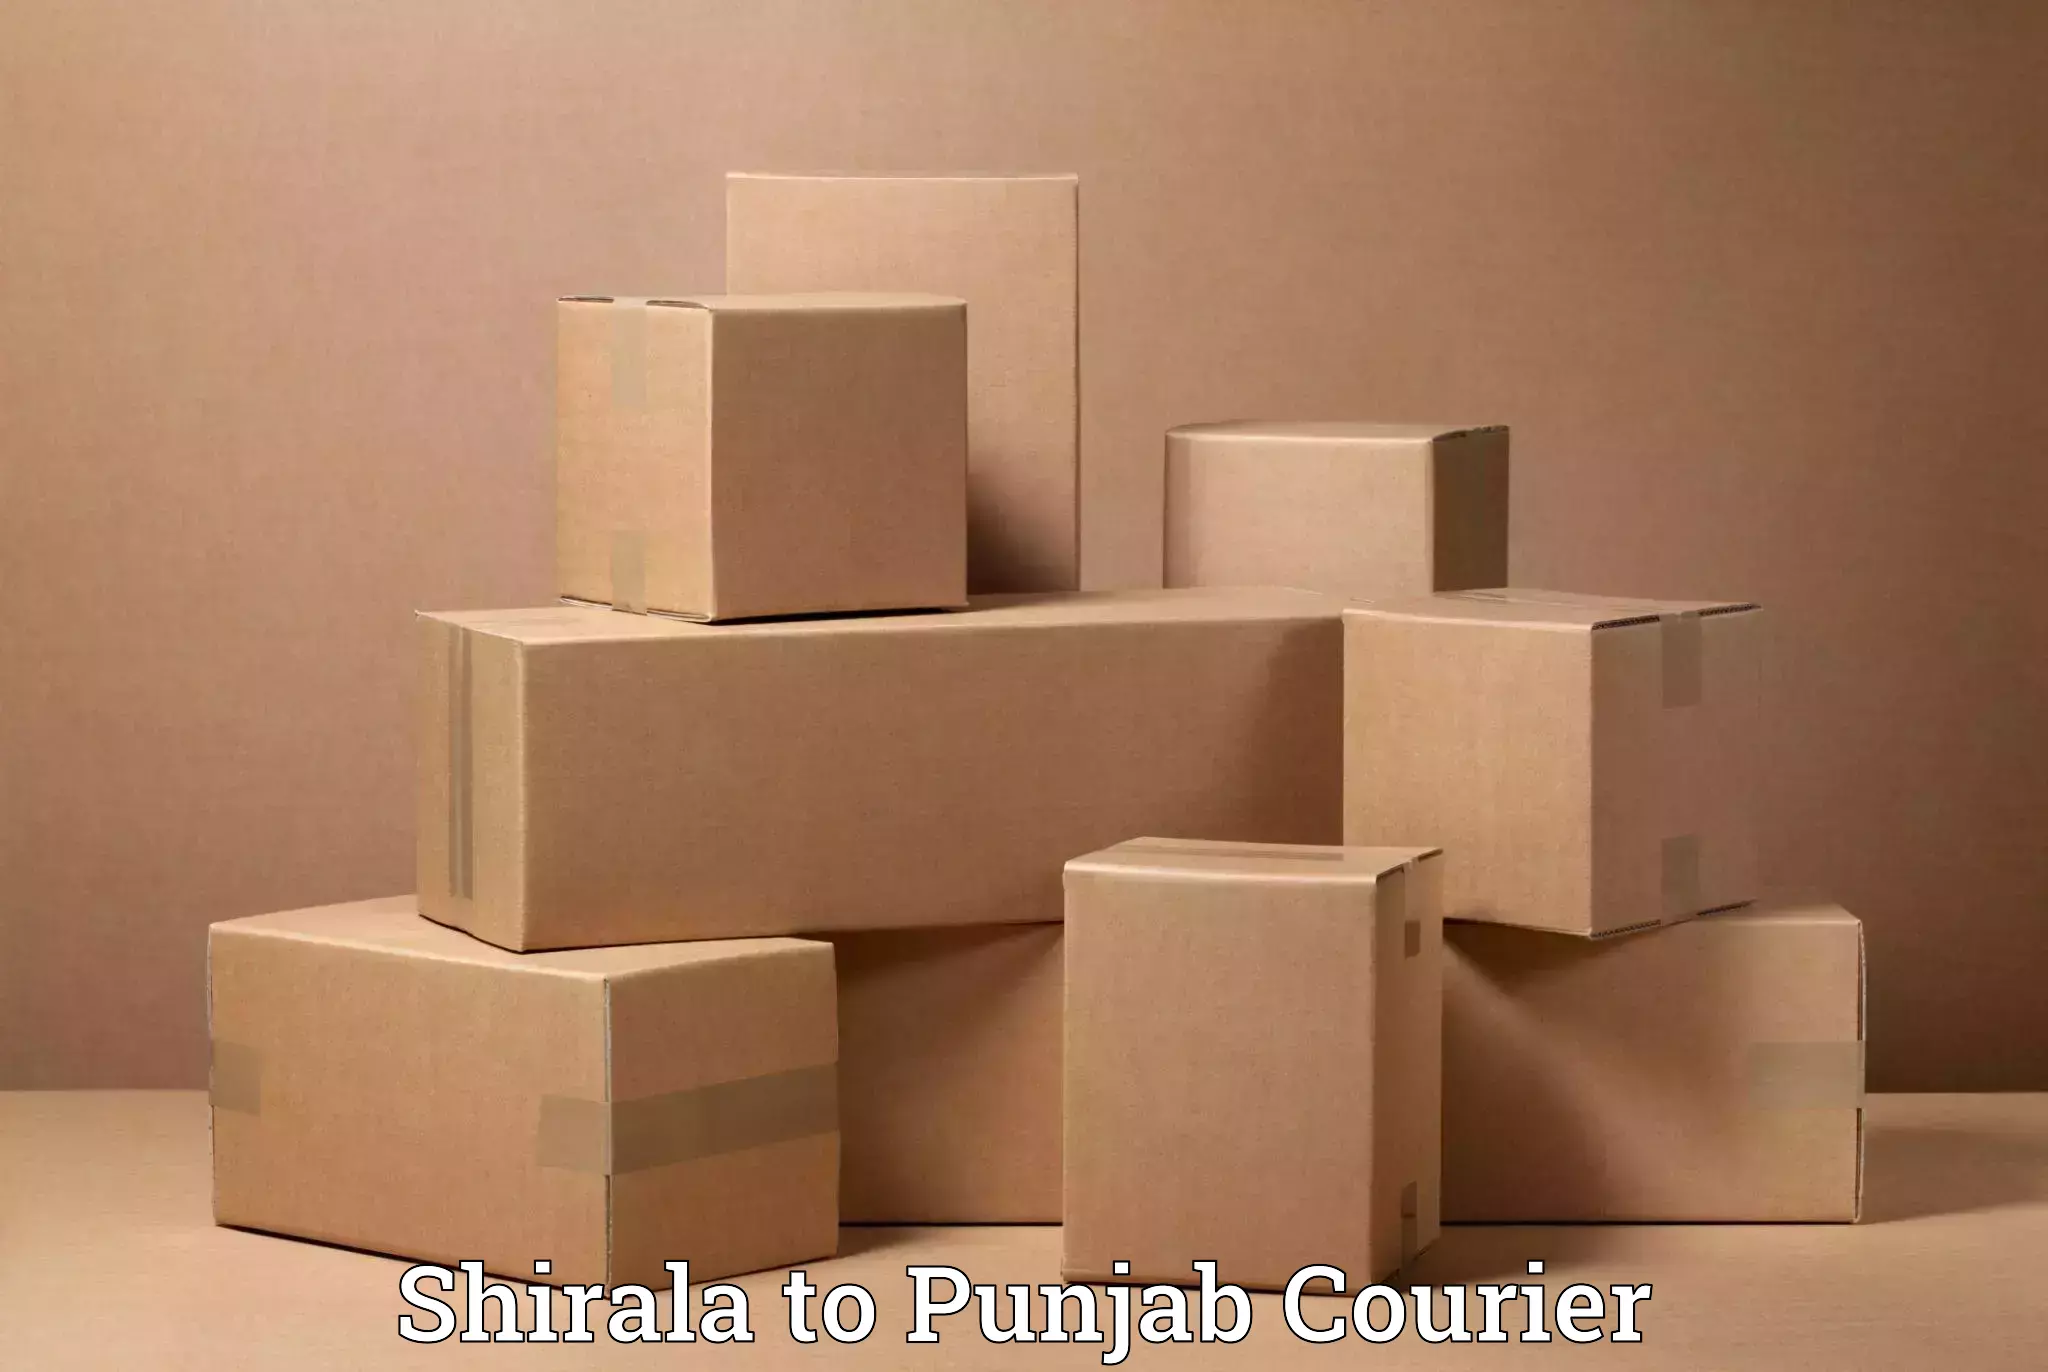 Quality household movers Shirala to Zirakpur